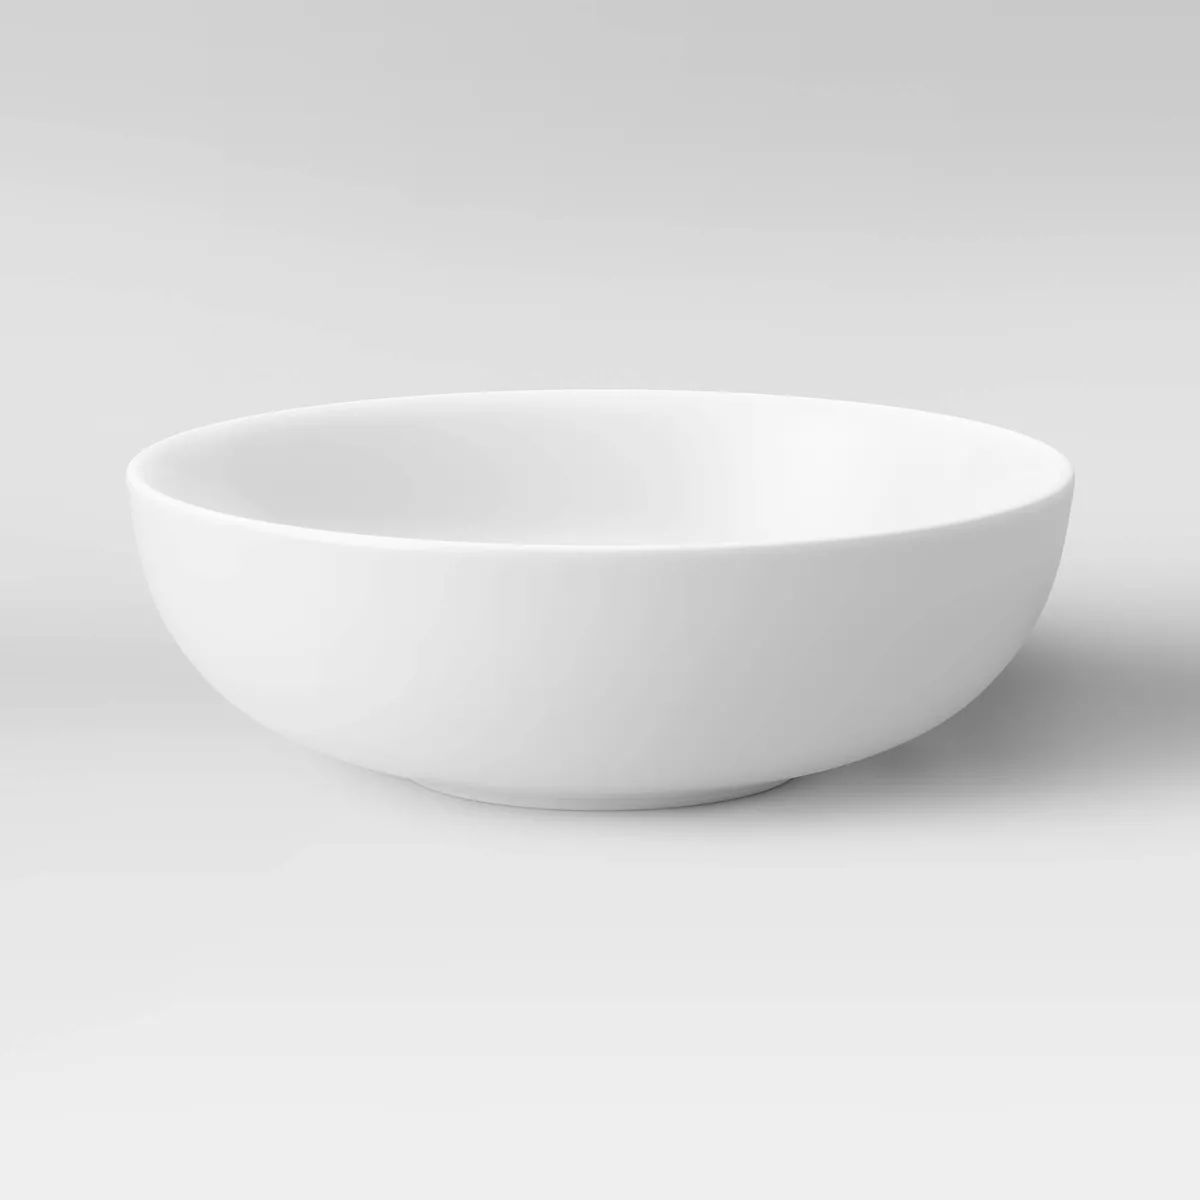 48oz Porcelain Serving Bowl White - Threshold™ | Target